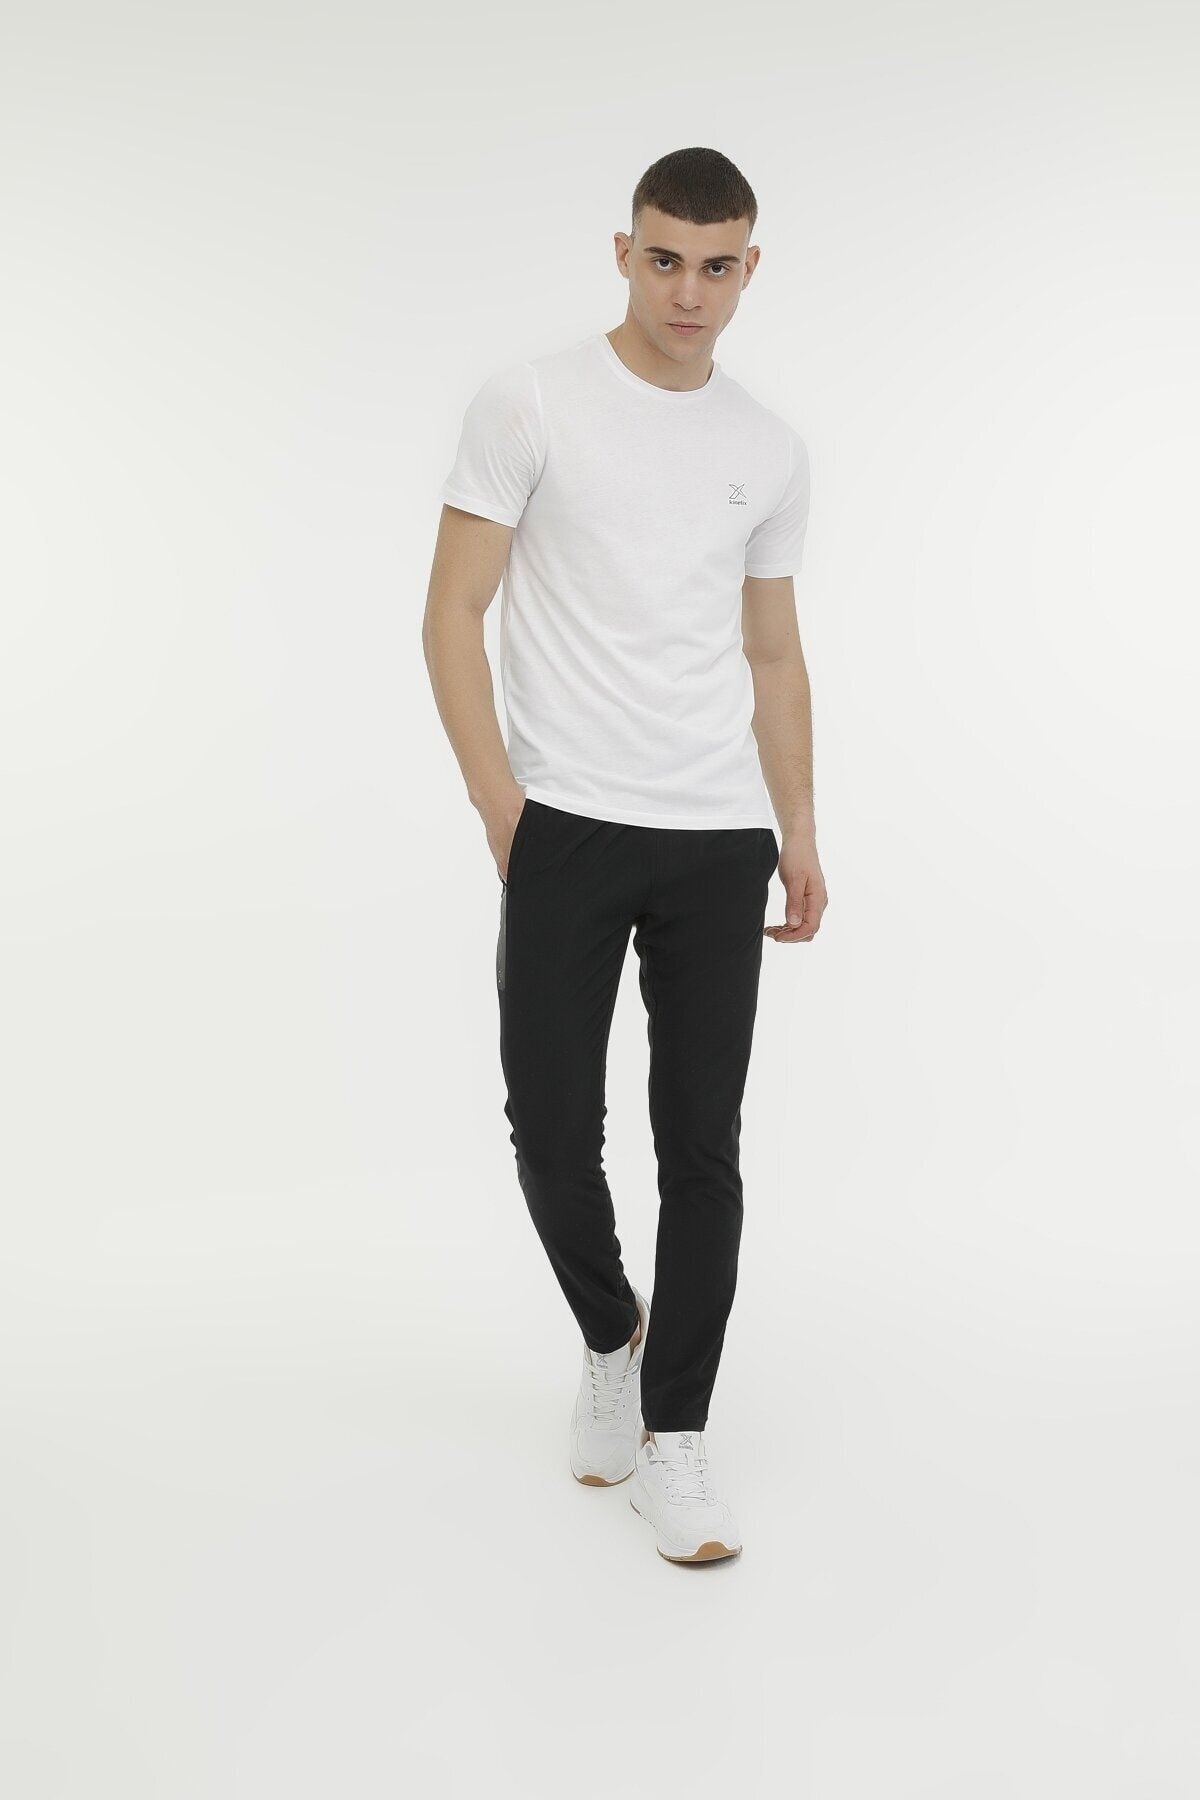 Kinetix M-sn220 Bsc C T-shırt 3fx Beyaz Erkek Kısa Kol T-shirt